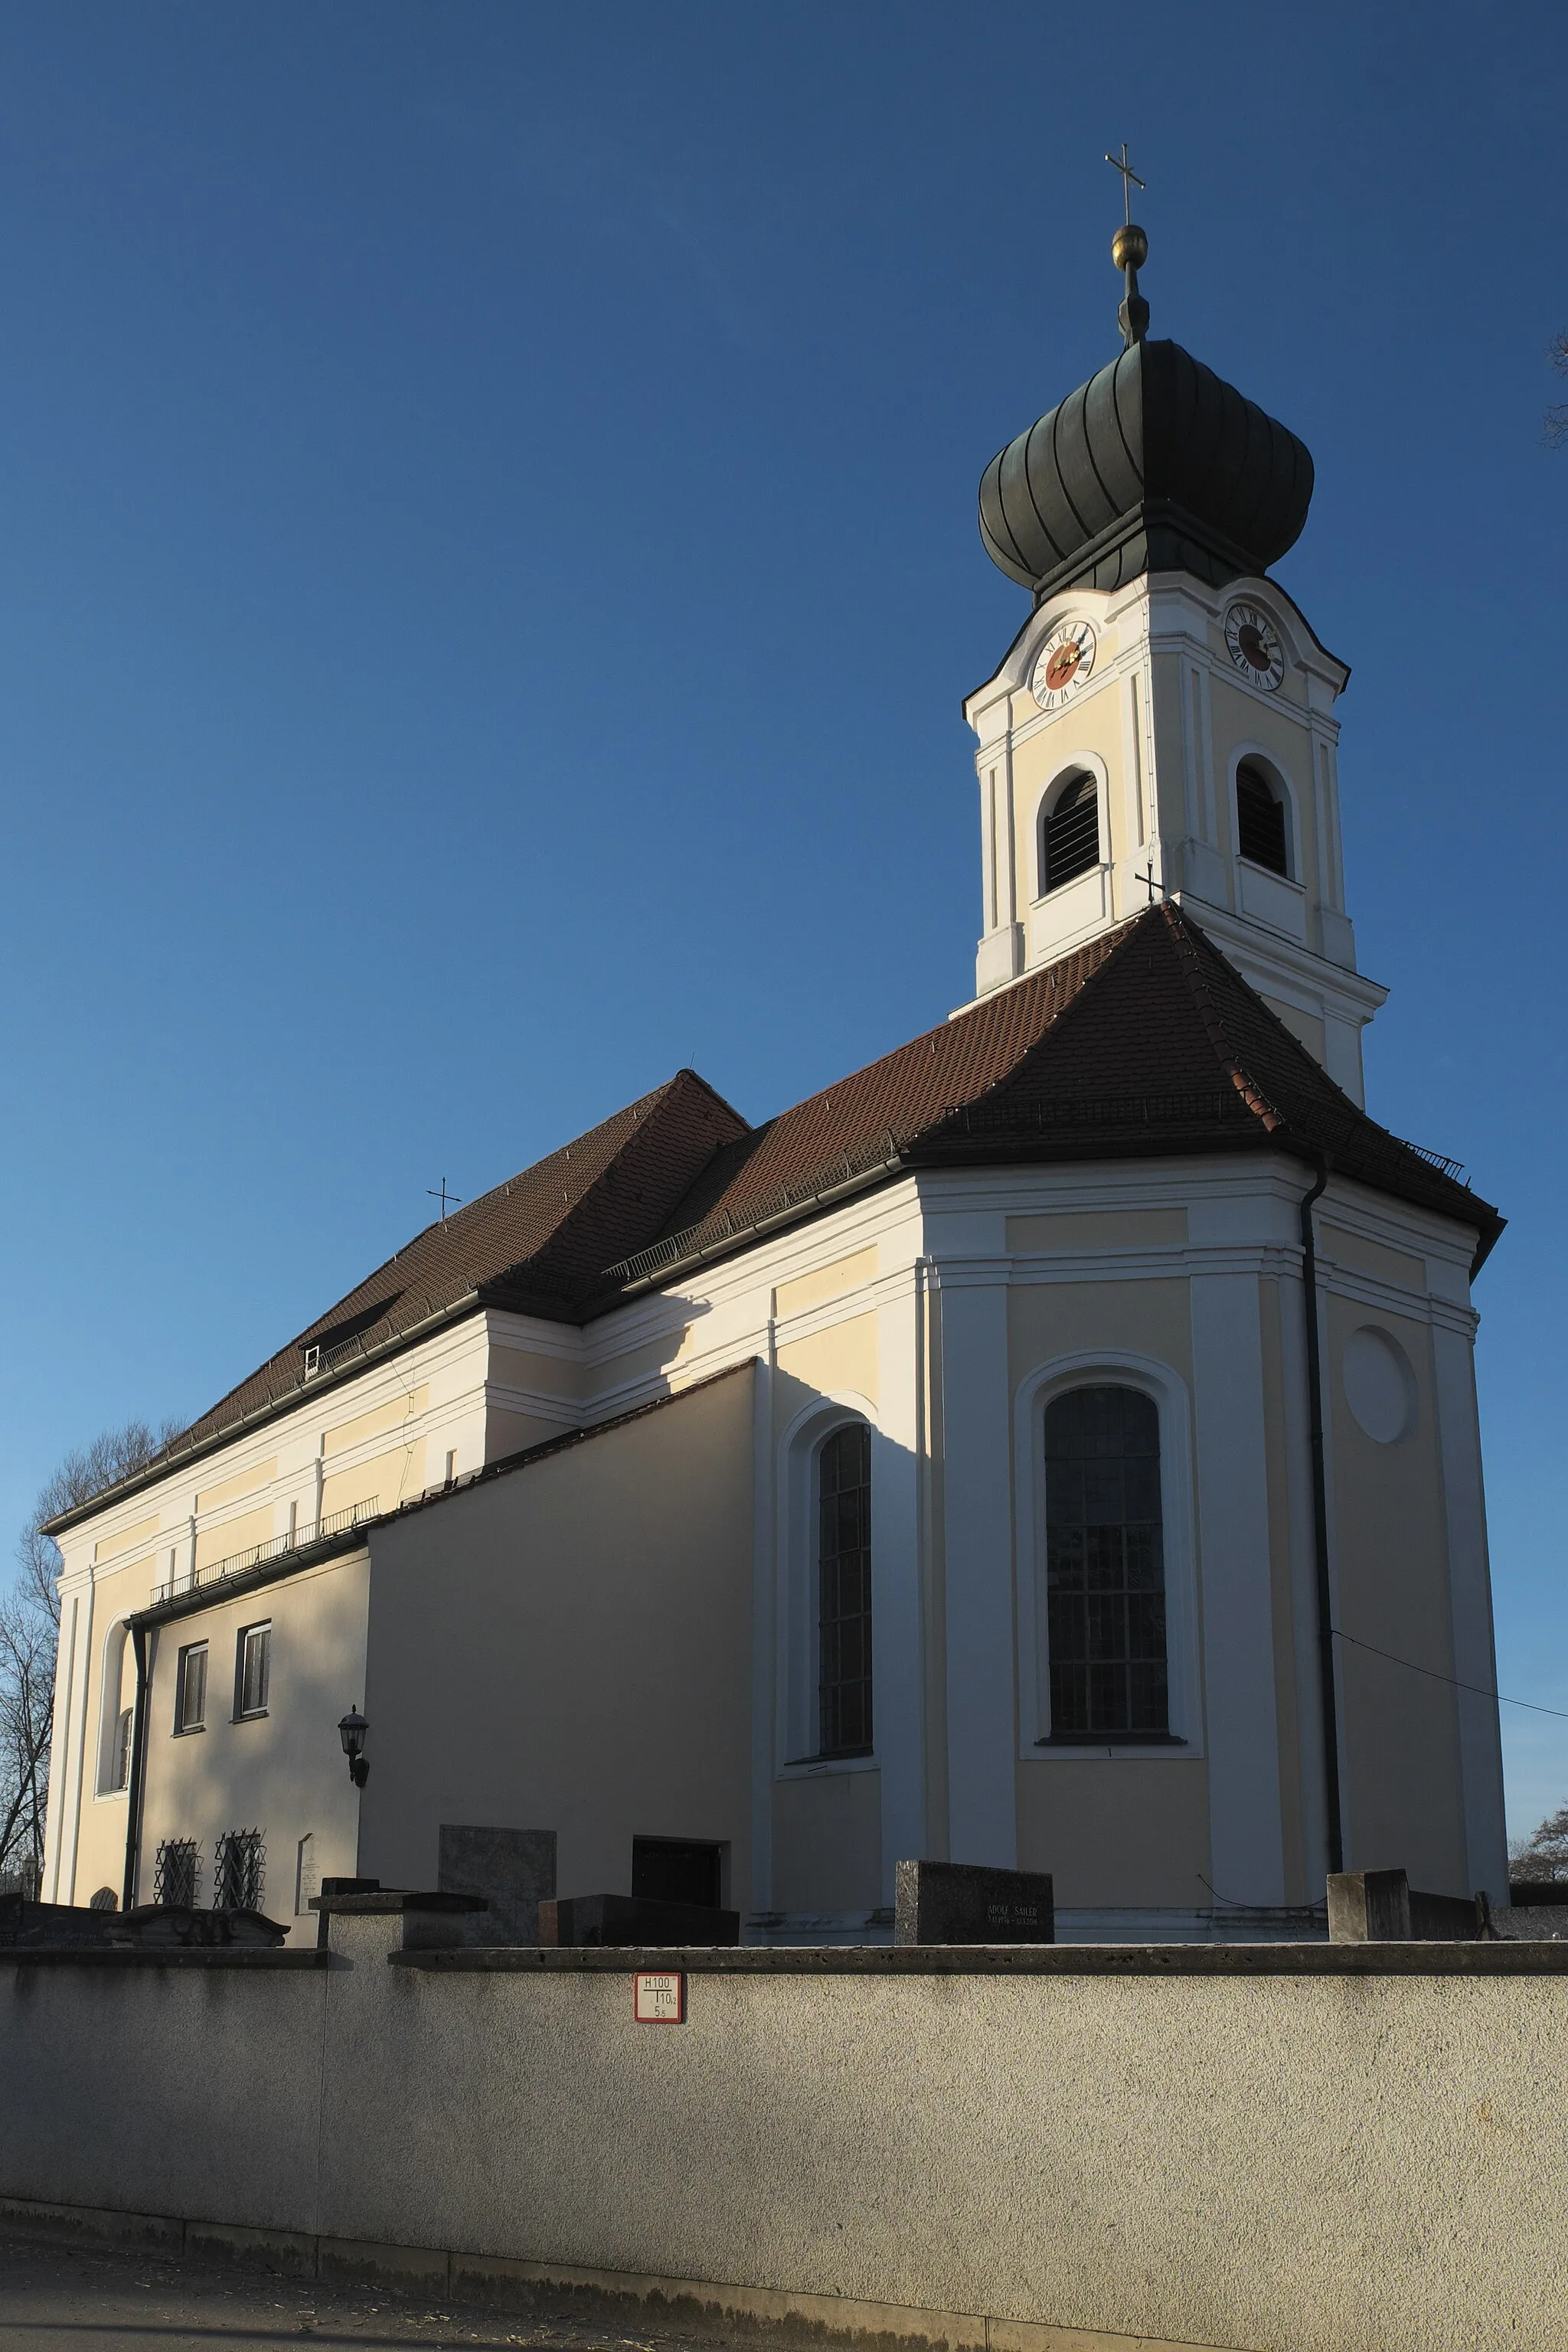 Photo showing: Katholische Pfarrkirche Mariä Himmelfahrt in Klingen (Aichach) im schwäbischen Landkreis Aichach-Friedberg (Bayern/Deutschland)